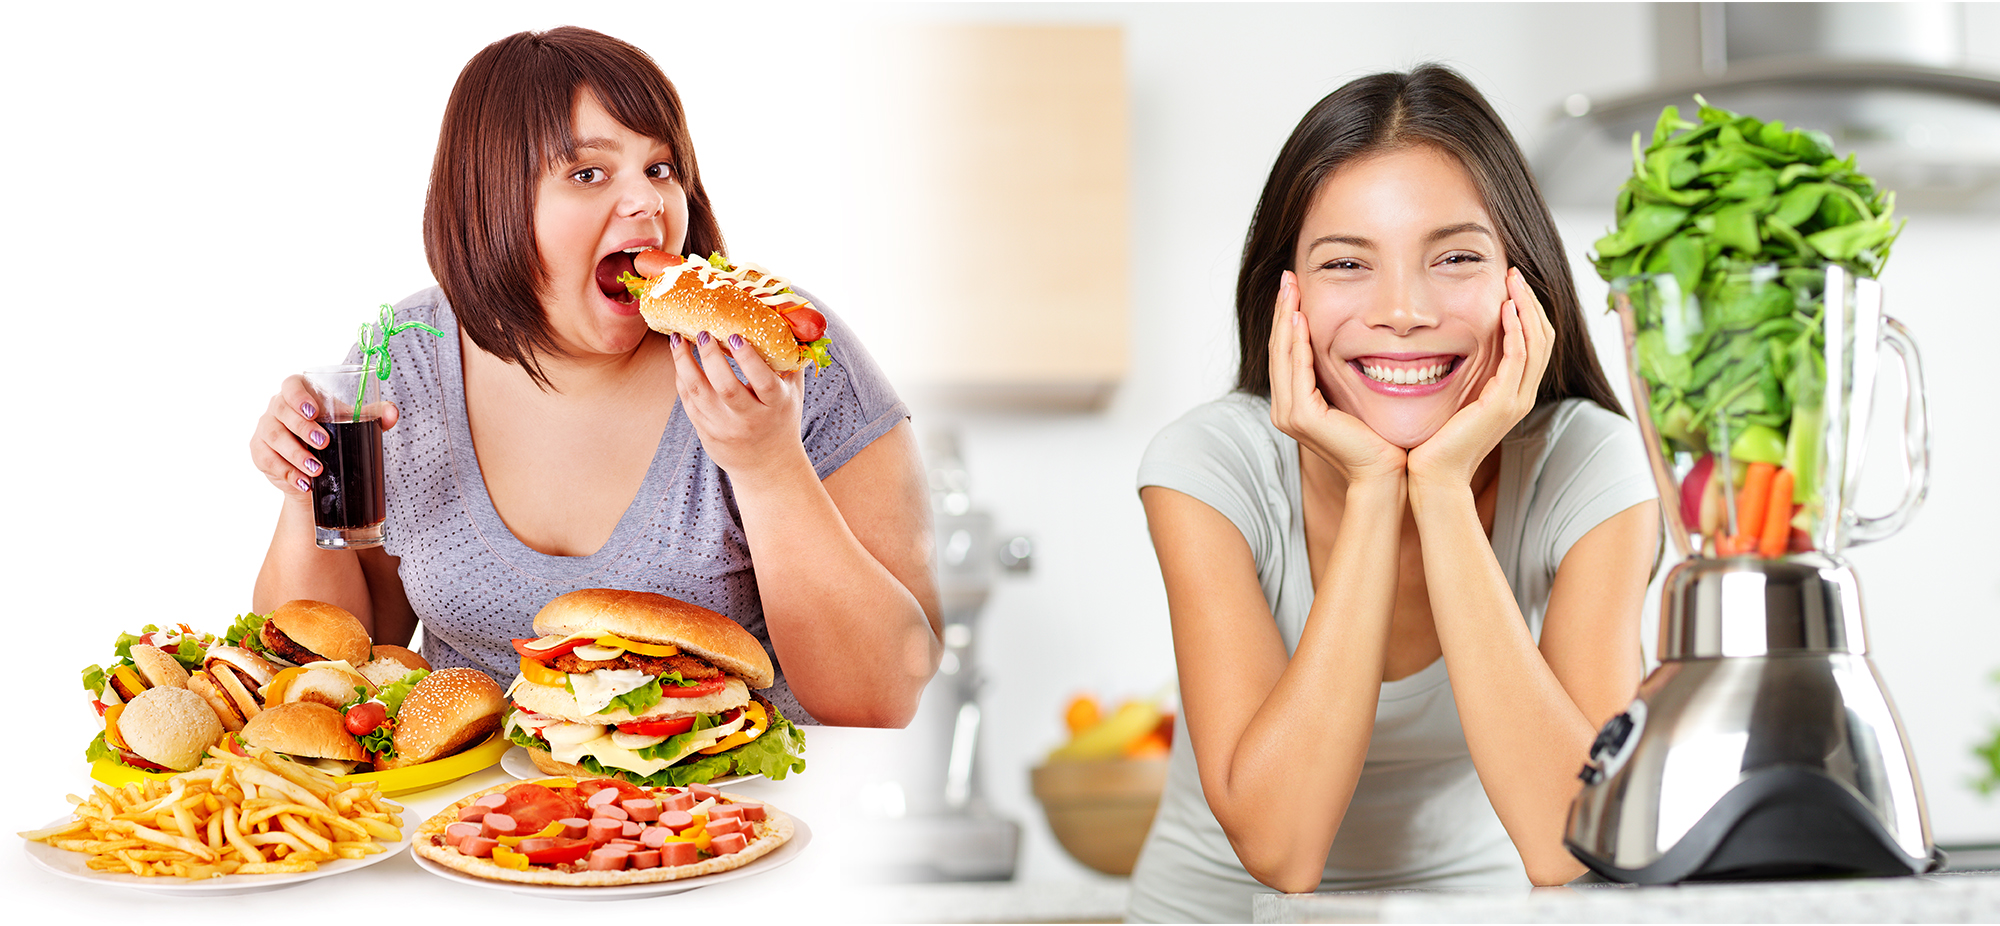 Реклама голод. Питание. Правильное и неправильное питание. Здоровое питание человека. Здоровая и нездоровая пища.